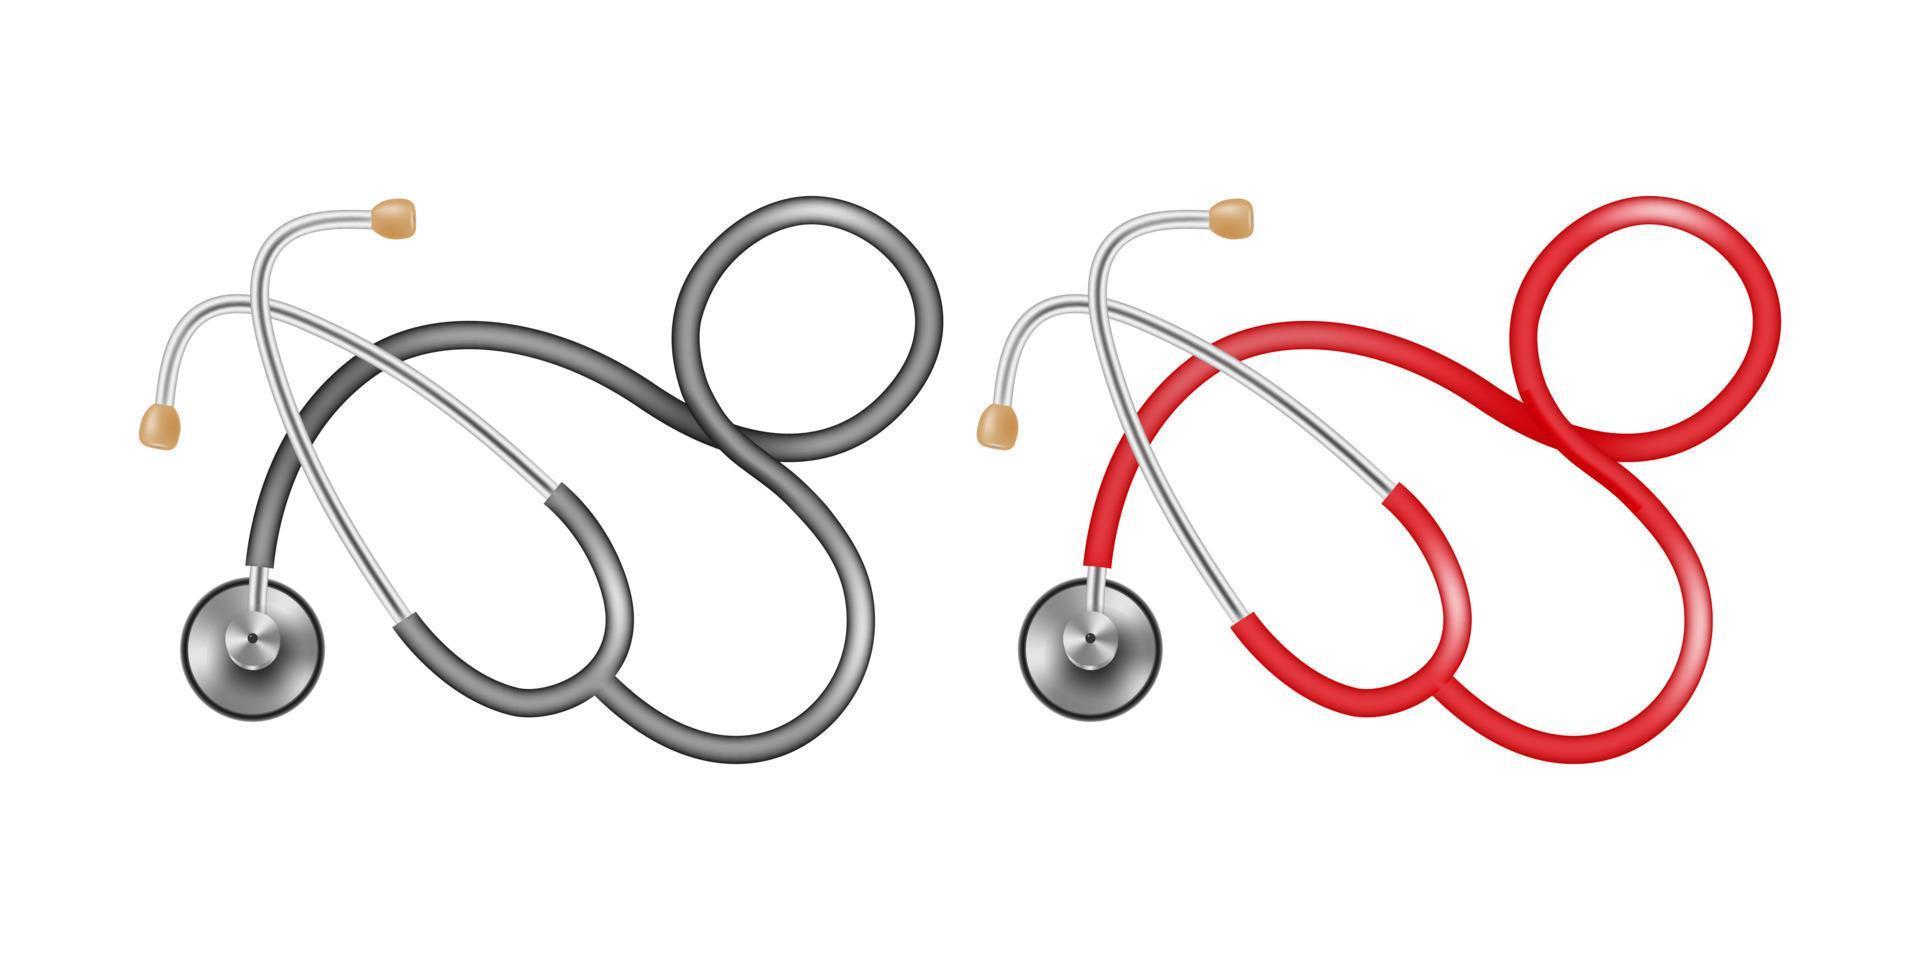 zwei Stethoskope mit schwarz und rot Röhren auf ein Weiß Hintergrund. medizinisch Gerät zum Hören zu das Herz, Atmung, Impuls, Druck Messung. Vektor Illustration.